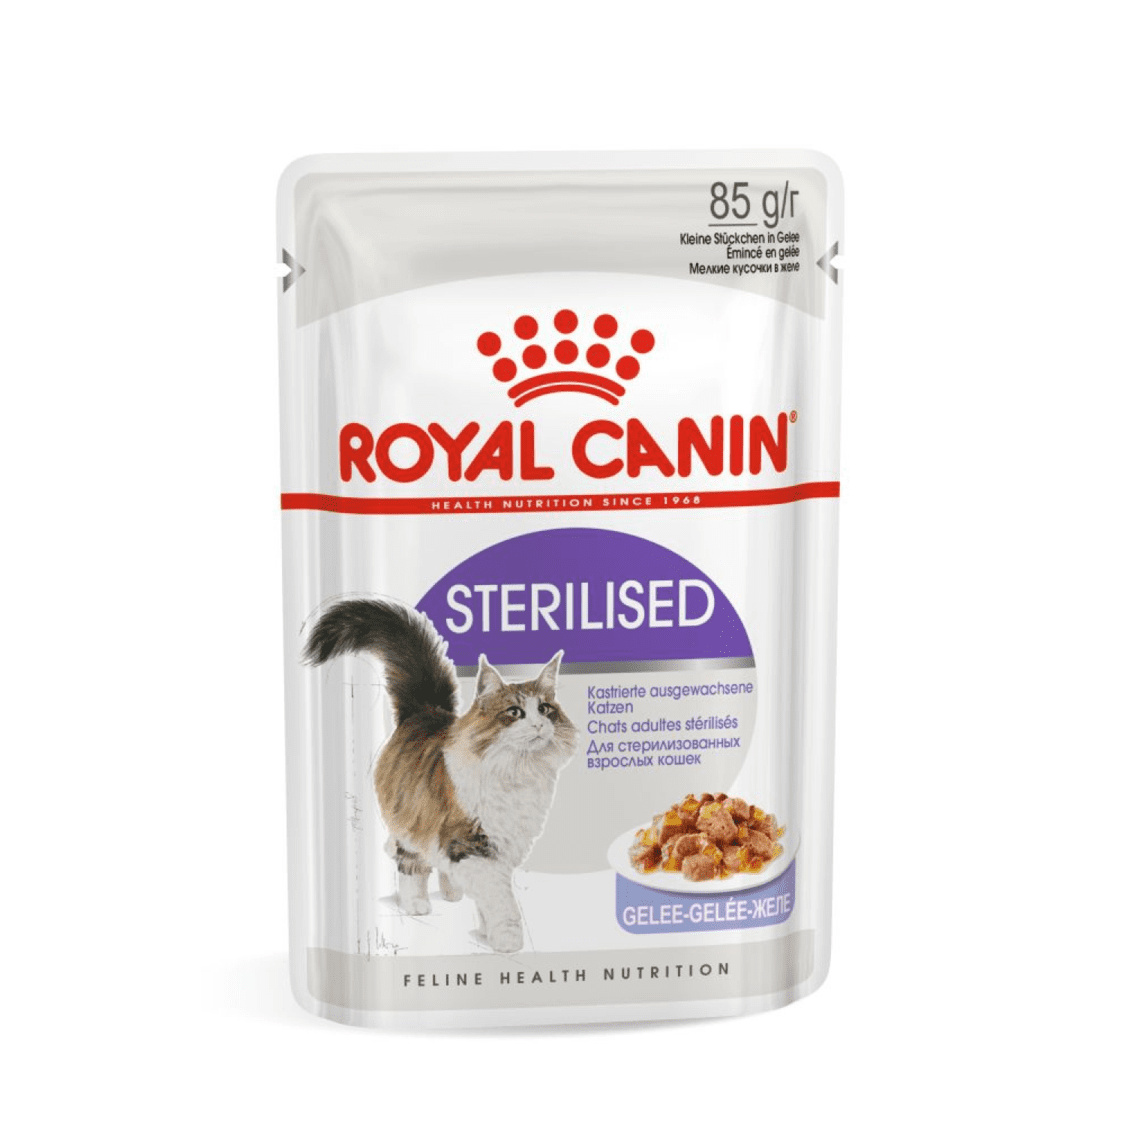 Royal Canin паучи Royal Canin паучи кусочки в желе для кастрированных кошек 1-7лет (28 шт.) royal canin паучи royal canin паучи кусочки в желе для кастрированных кошек 1 7лет 28 шт